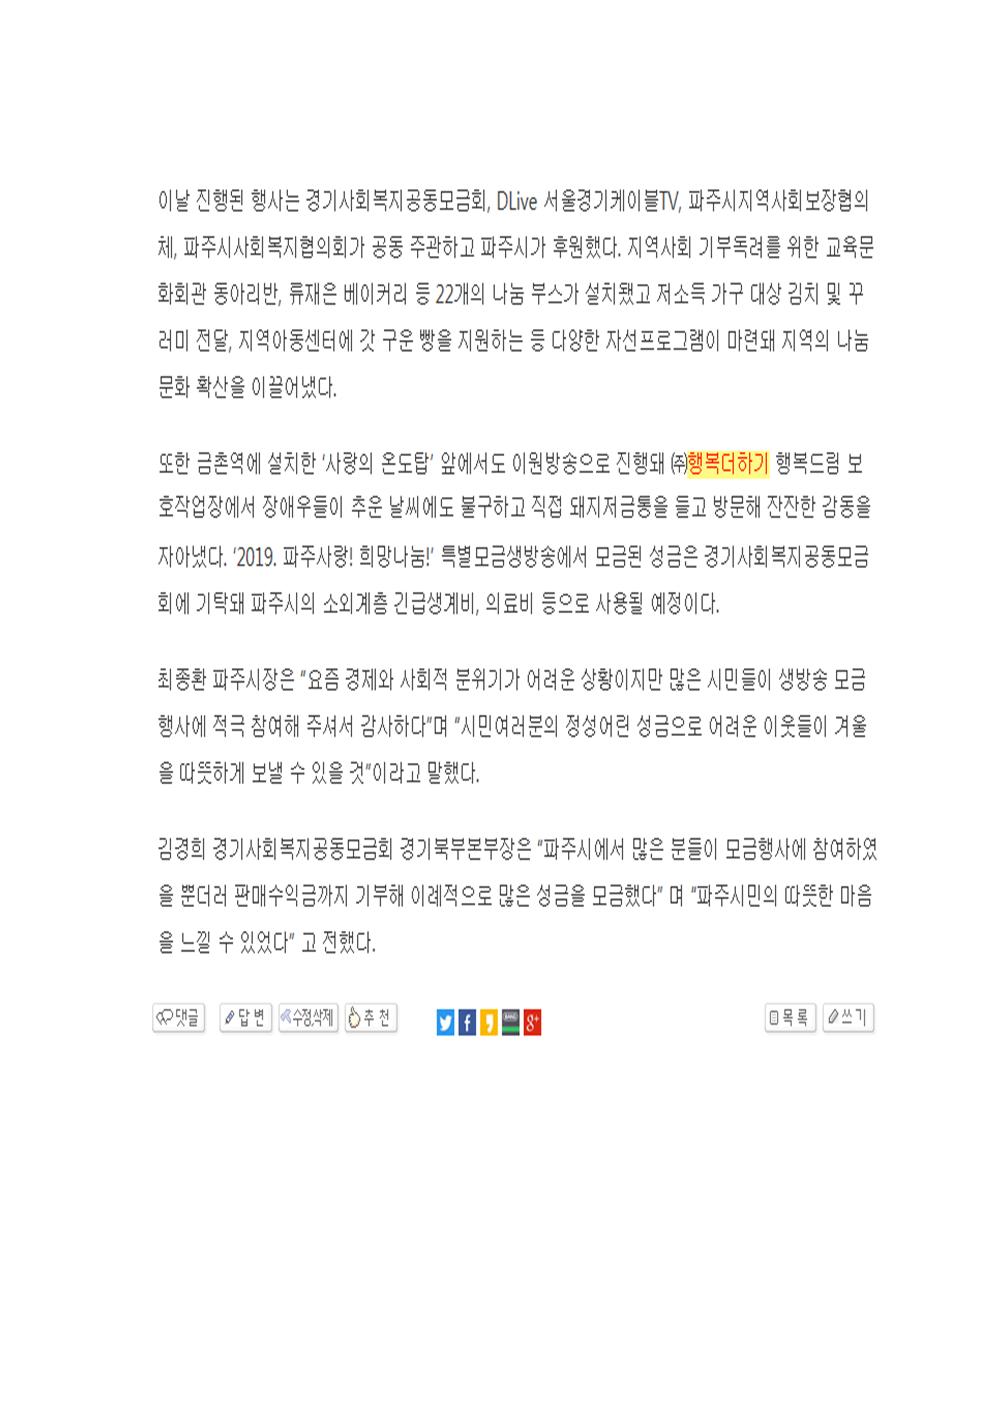 고앙.파주 시민연합뉴스 (2018. 12. 21 게재)  2019 파주사랑! 희망나눔! 특별모금생방송